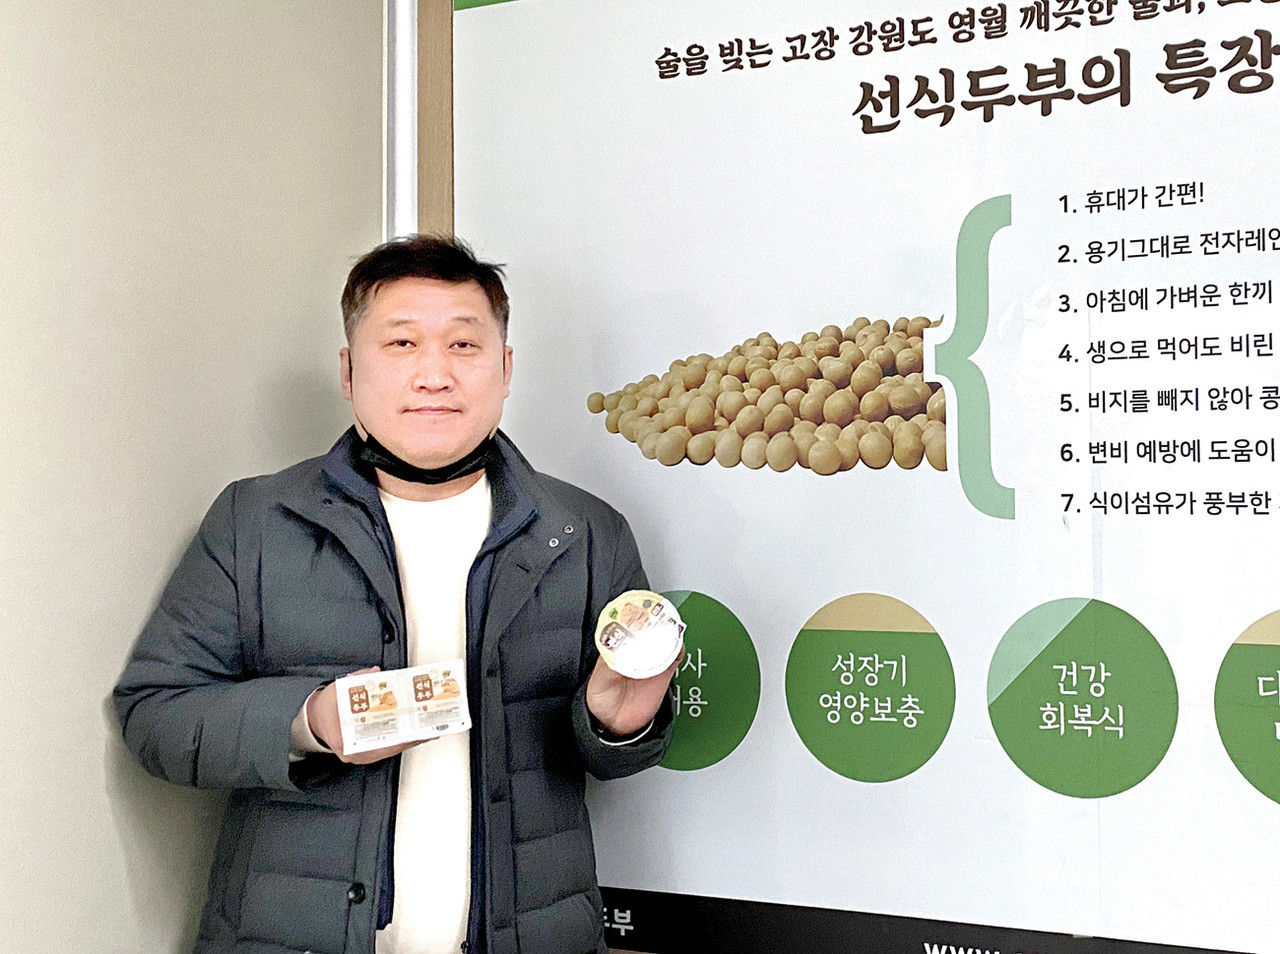 김종영 (주)내먹 차장은 주력 제품인 생식두부와 소이푸딩에 비지가 들어가기 때문에 기존의 두부보다 영양성분이 뛰어나다고 설명했다. 